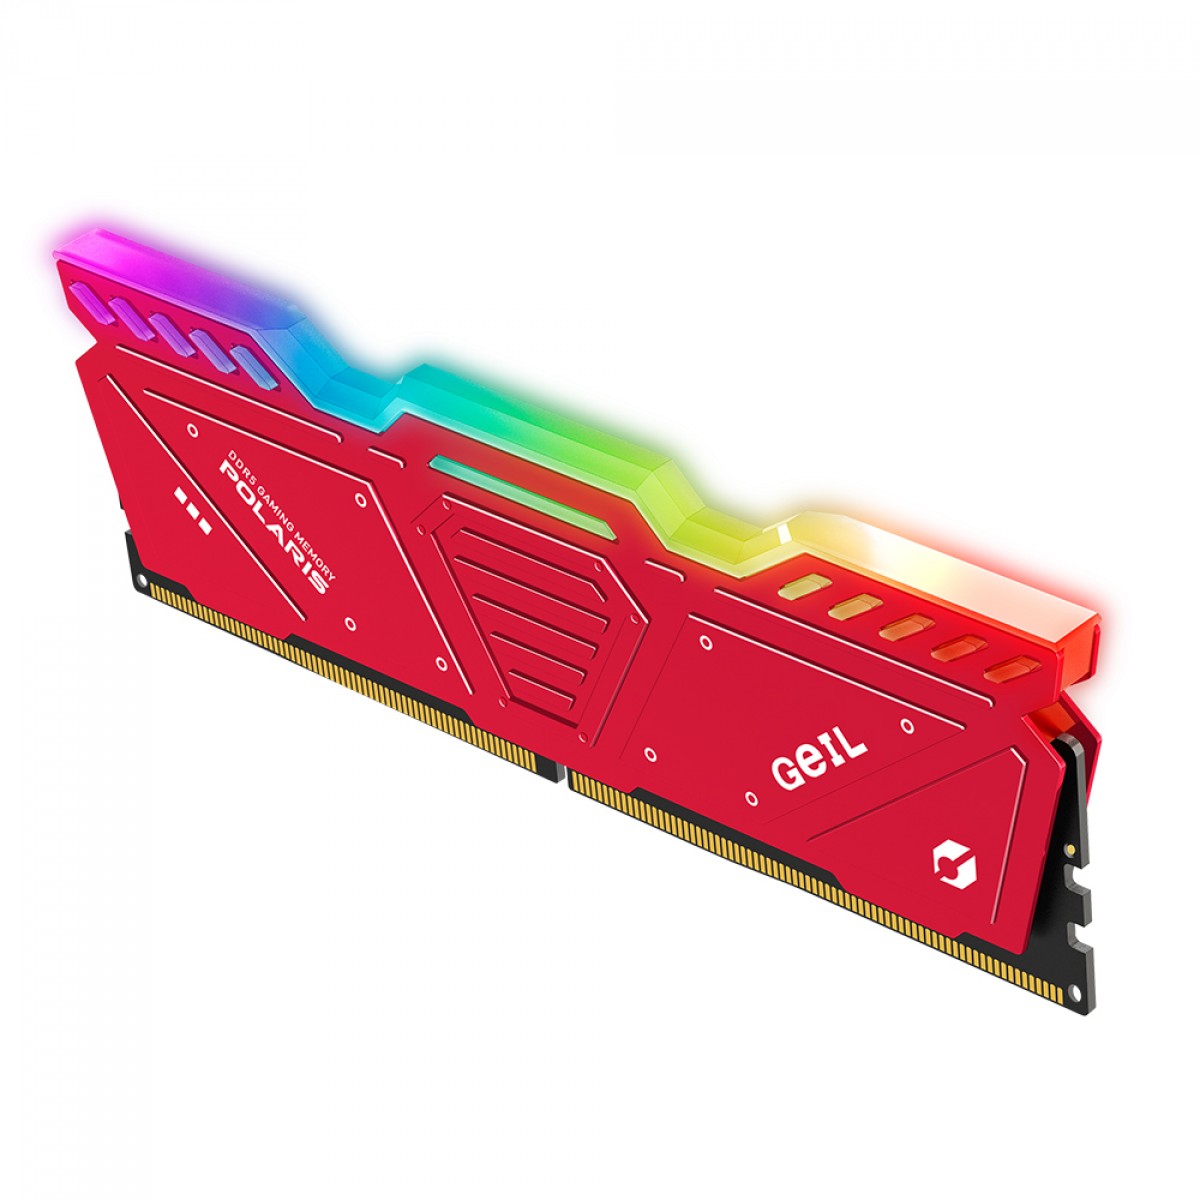 Memória DDR5 Geil Polaris RGB, 16GB (2x8GB) 4800MHz, Red, GOSR516GB4800C40DC